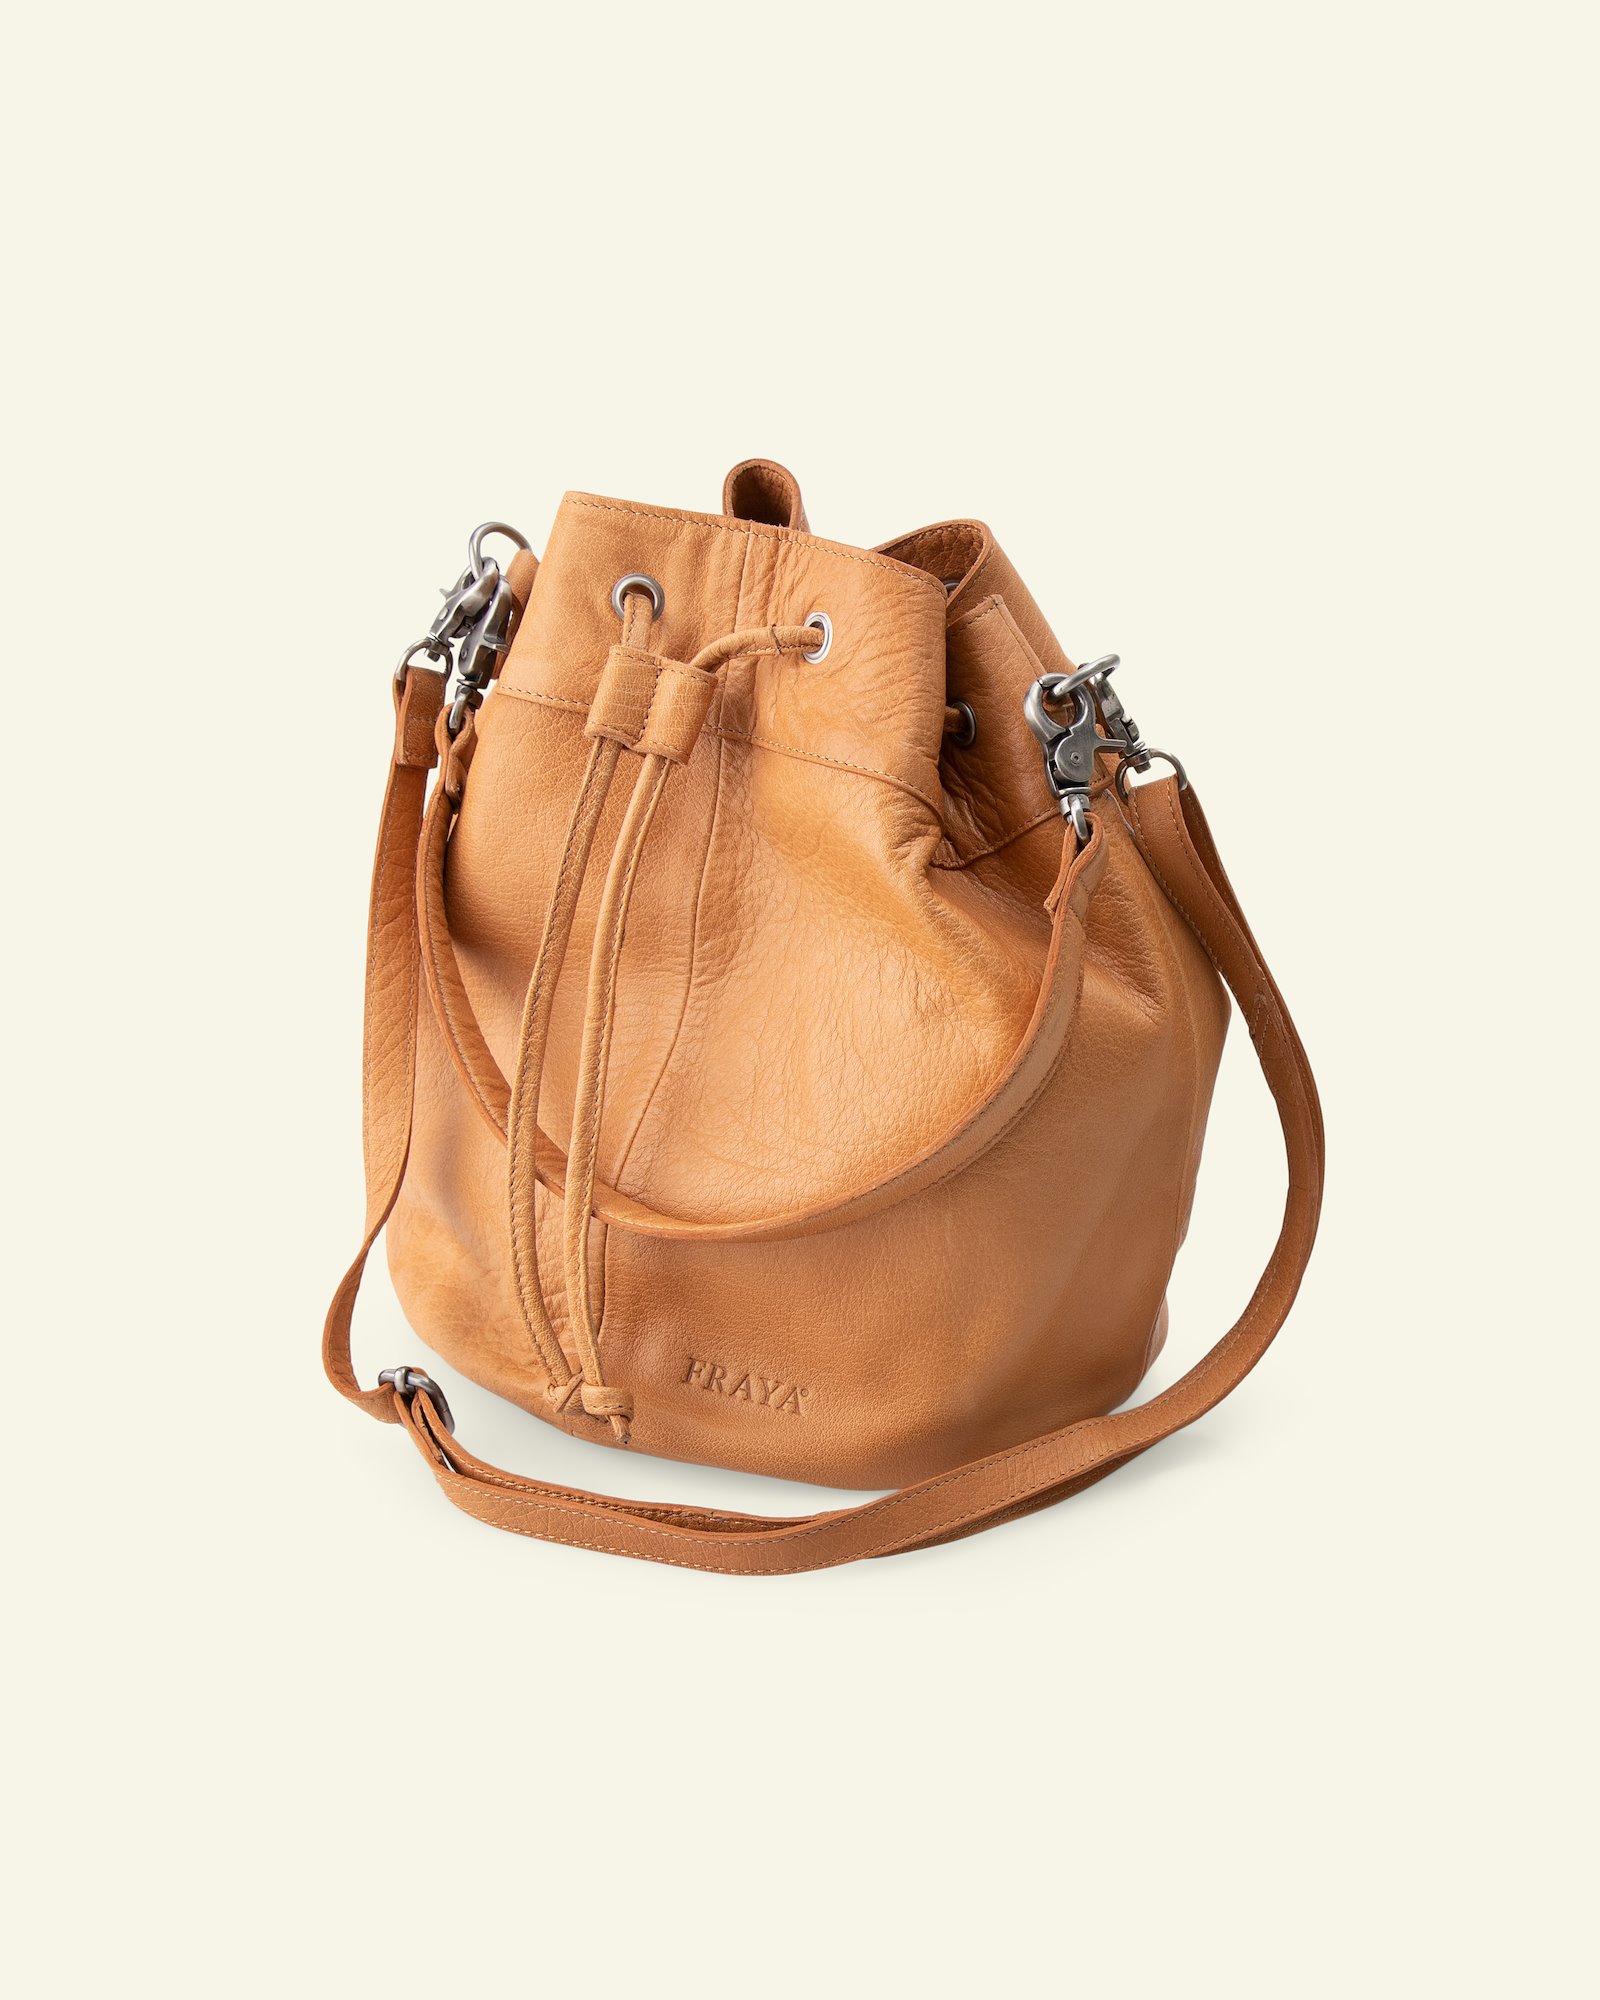 FRAYA leather shoulder bag 23x28cm brown 83316_pack